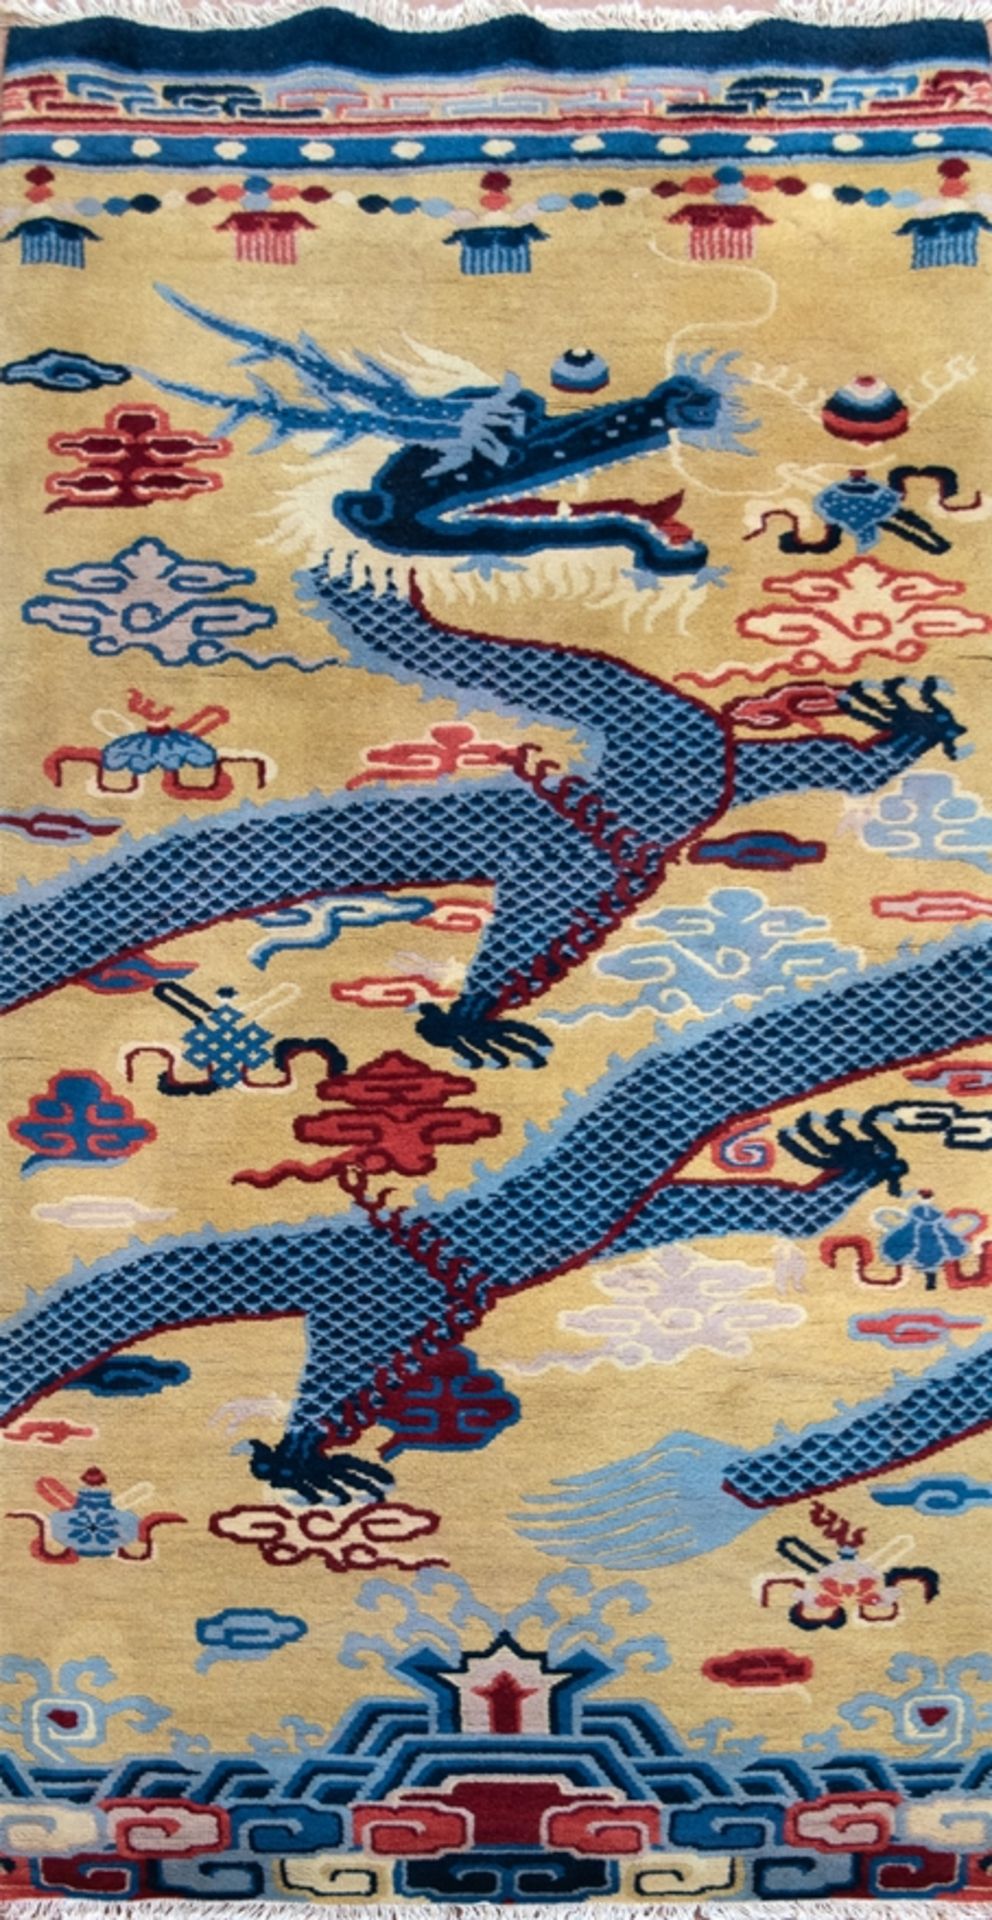 2 Säulen-Teppiche, China, blau geschuppter Drache auf goldgelbem Grund, roter und blauer Ornamentde - Bild 2 aus 2